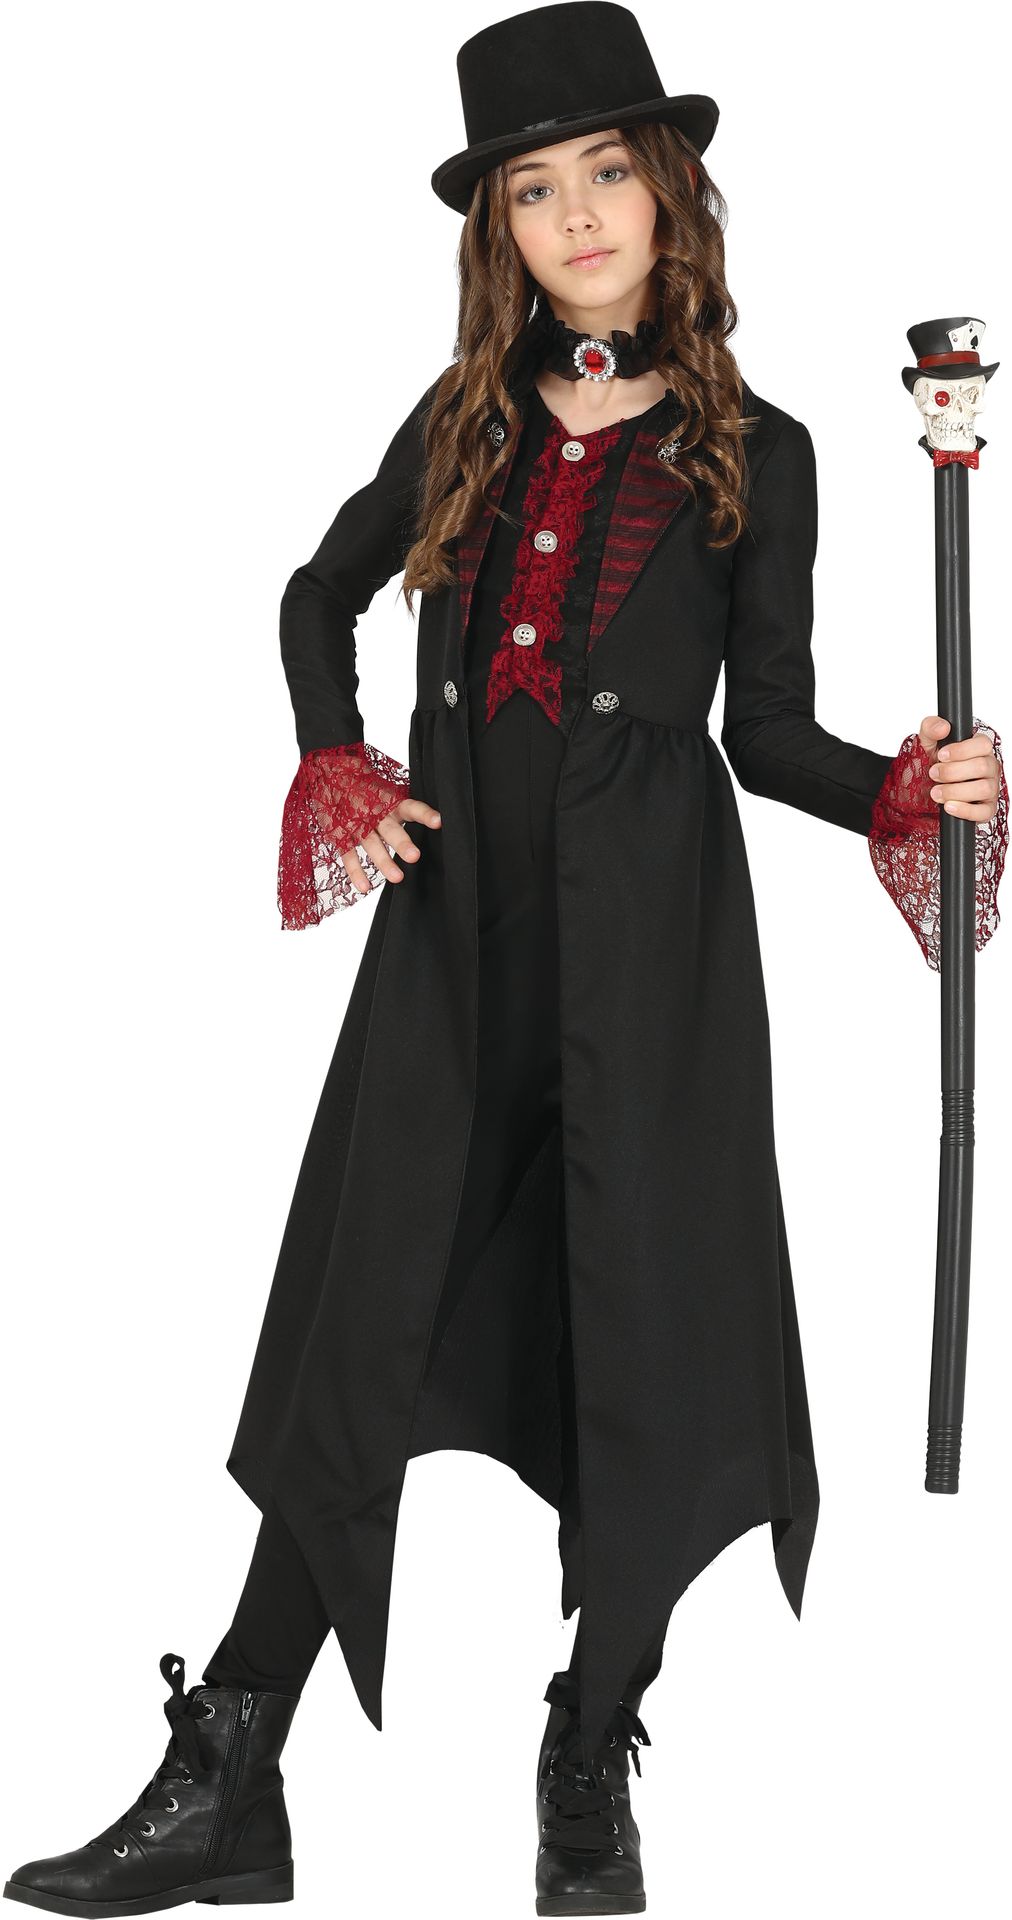 Steampunk gothic kostuum meisje